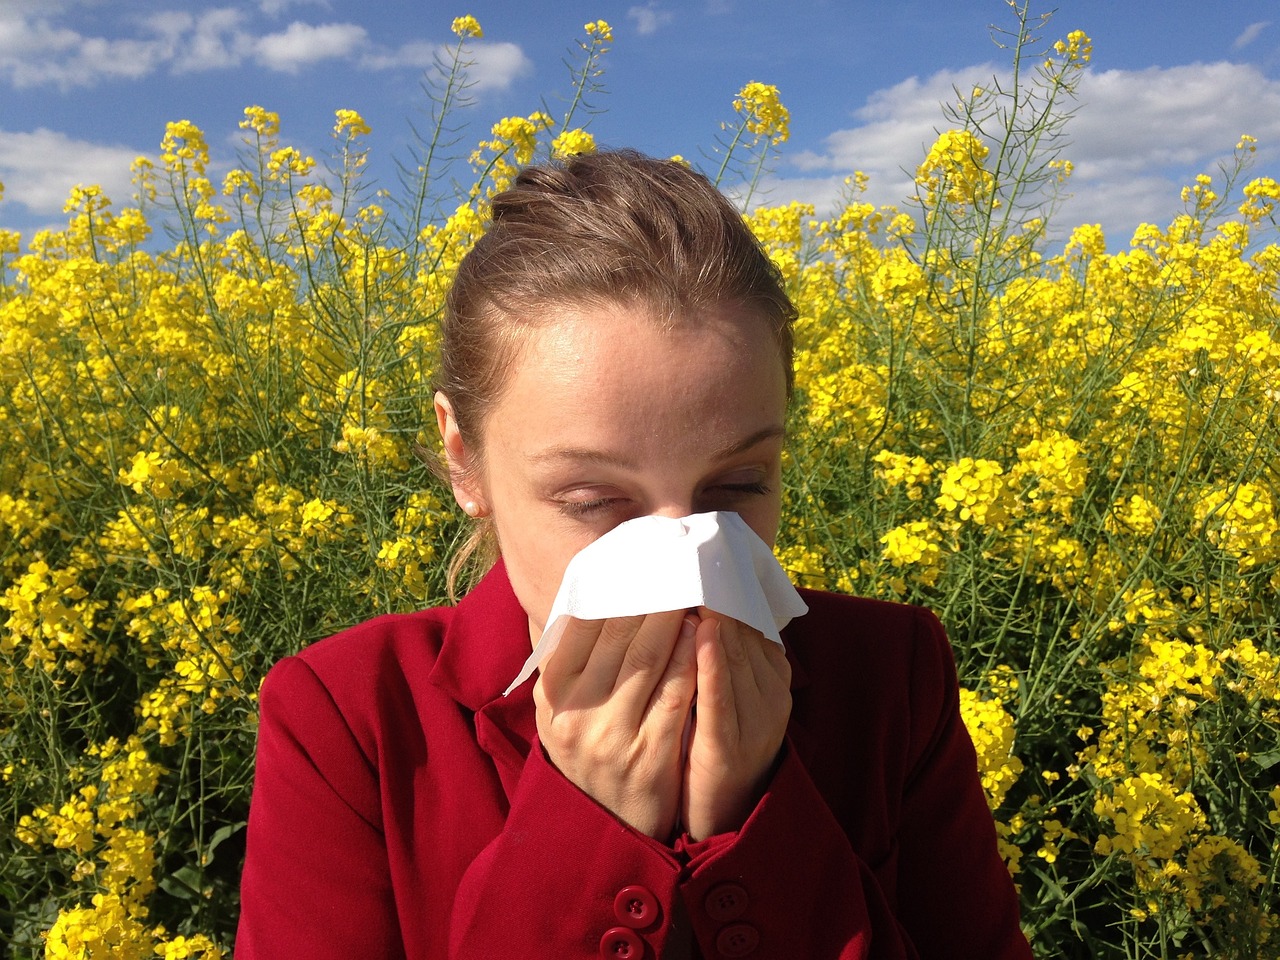 Συμβουλές από το Harvard Health Medical  για τις ανοιξιάτικες αλλεργίες